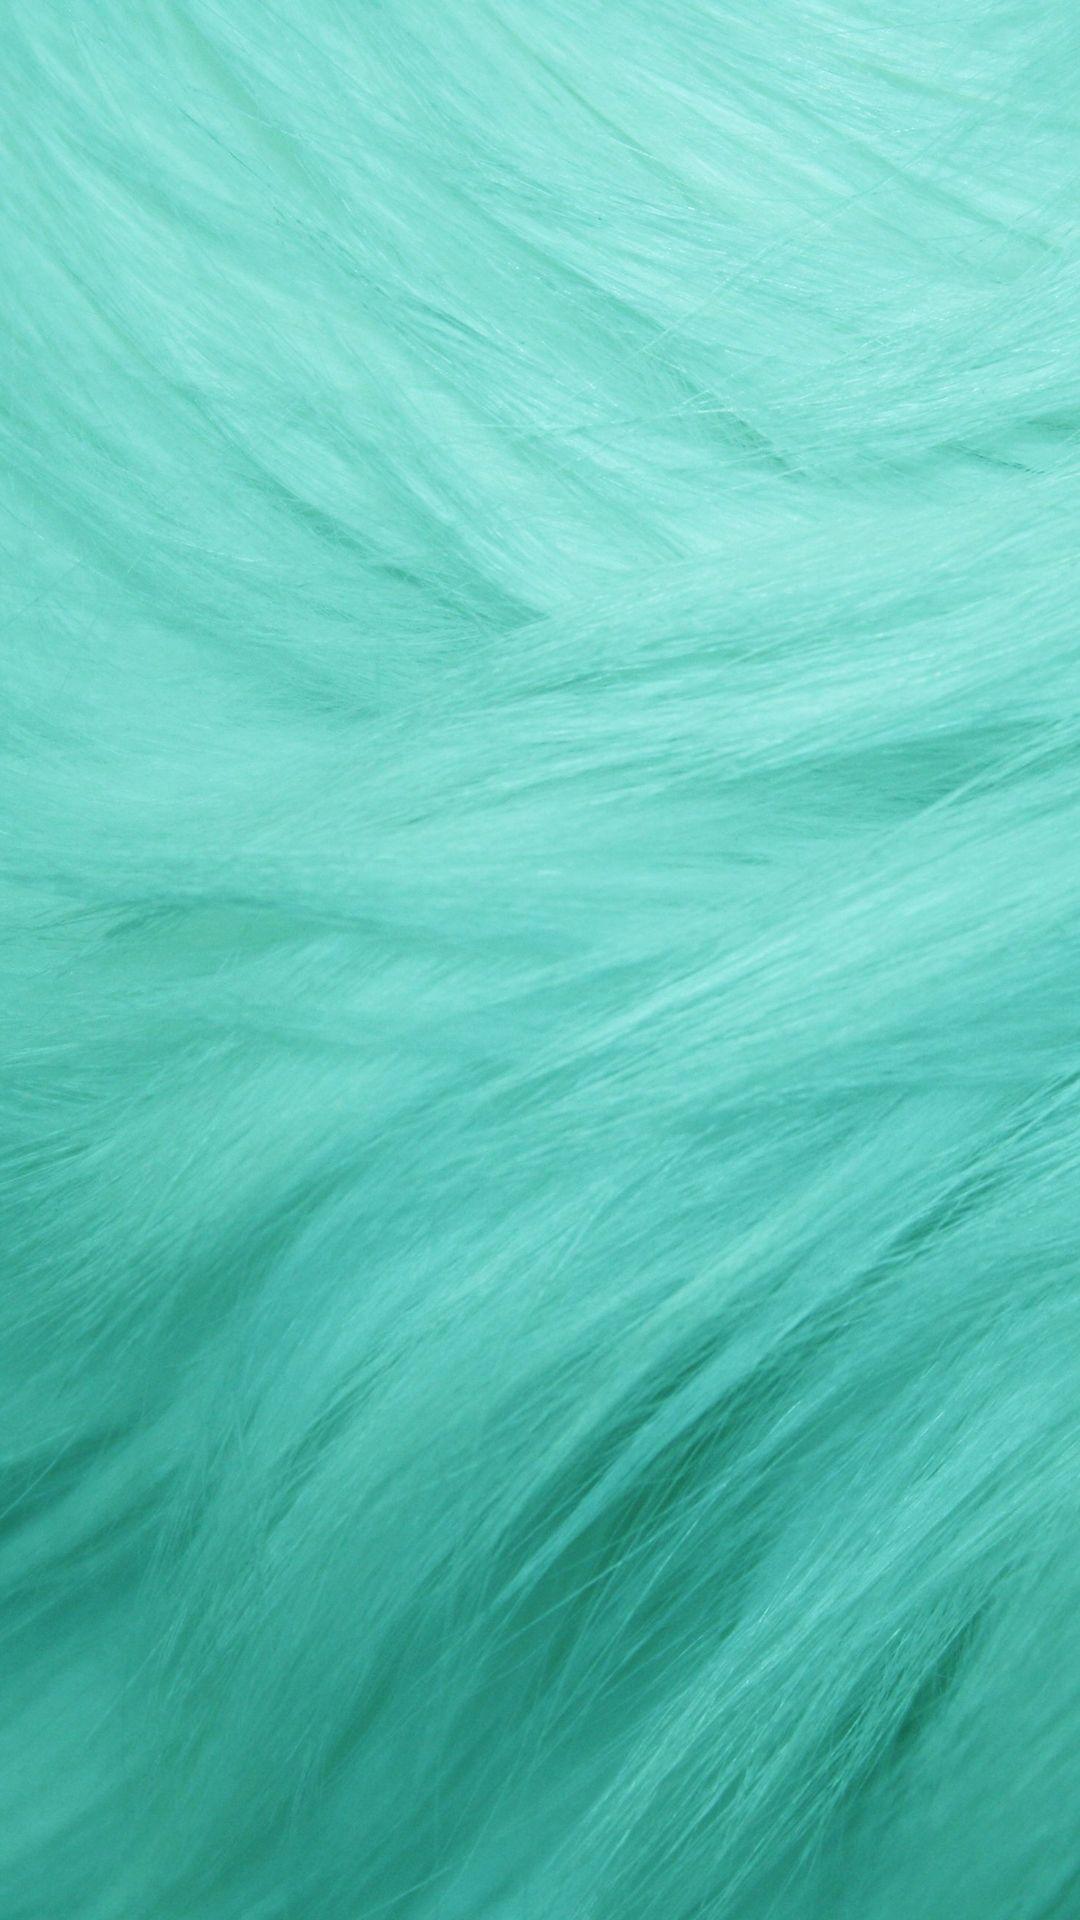 Mint Green Wallpapers - Top Những Hình Ảnh Đẹp